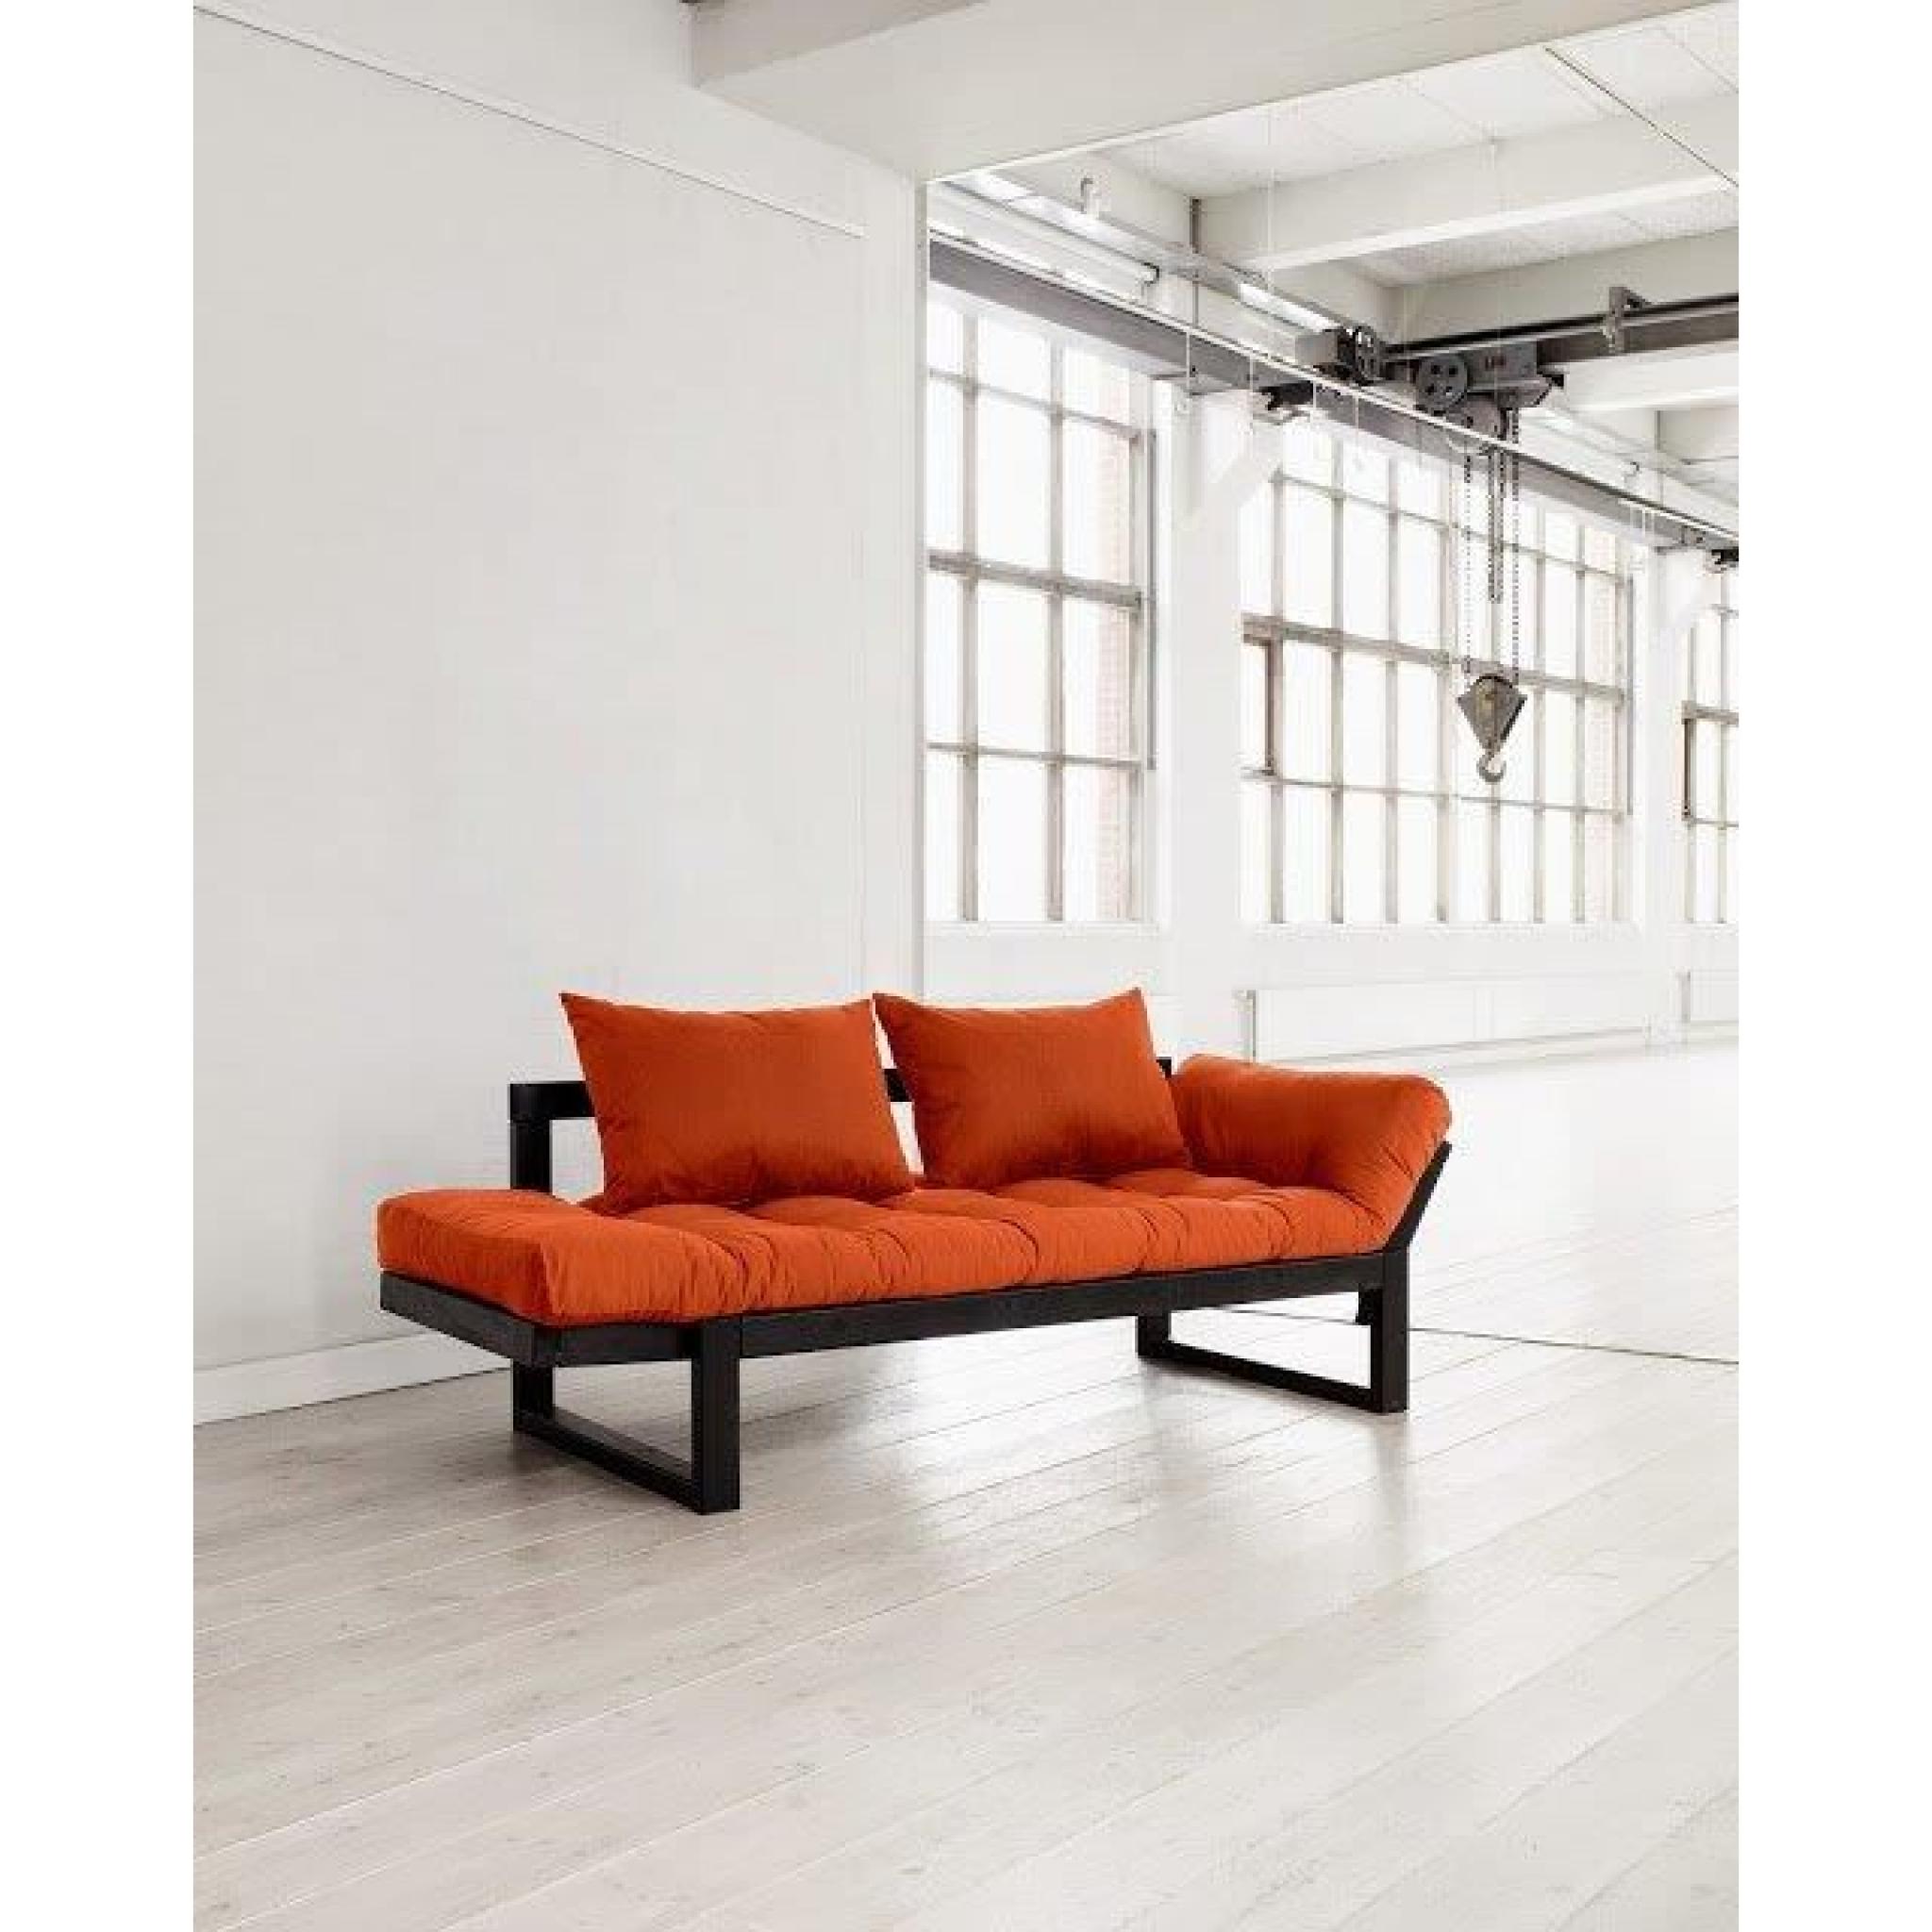 Banquette méridienne noire futon orange EDGE couchage 75*200cm